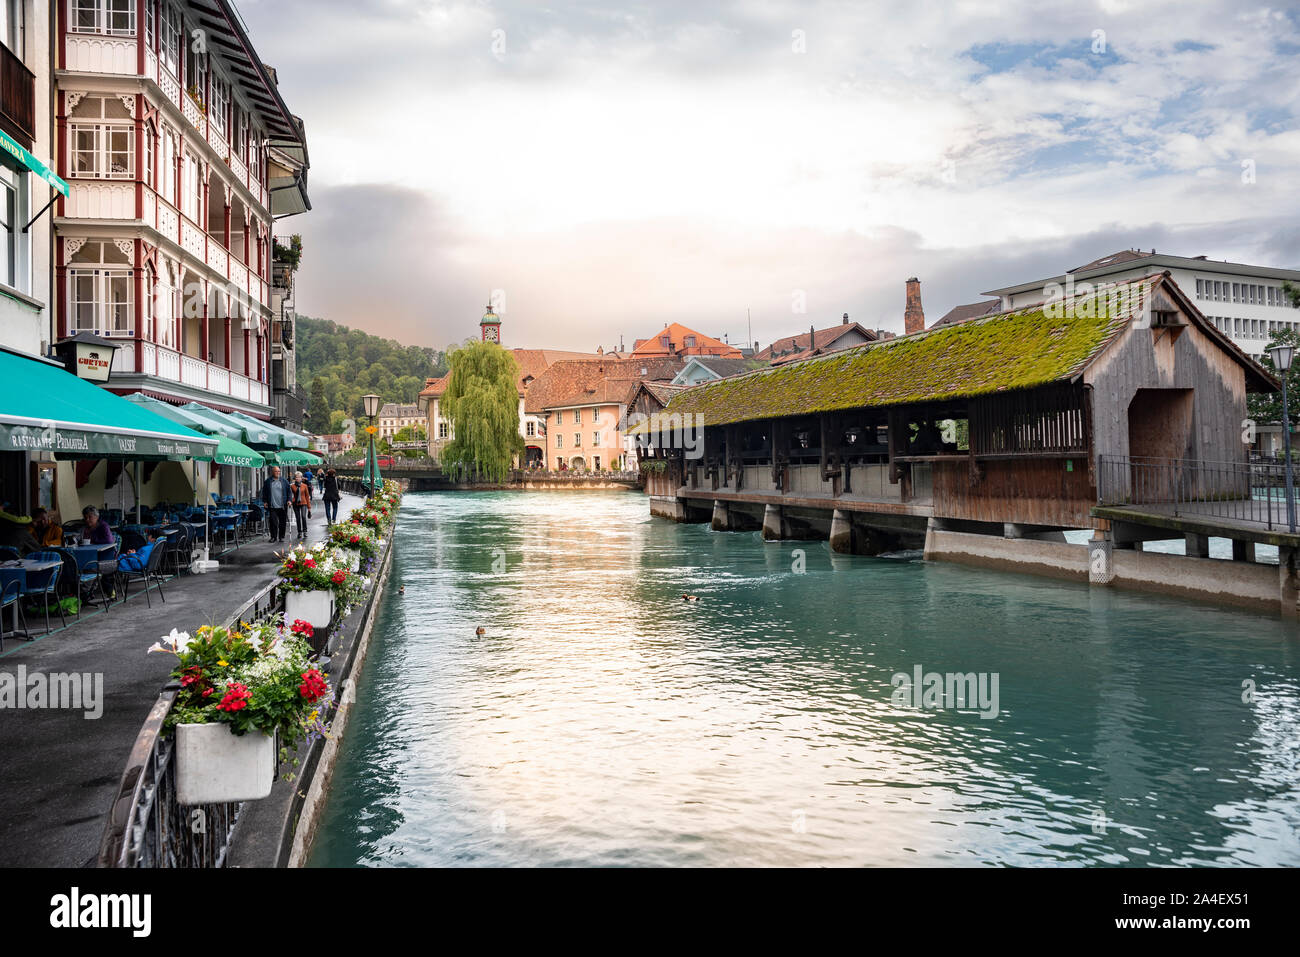 Il centro storico con il fiume Aare e il ponte in legno Untere Schleuse, Thun, Oberland bernese, Svizzera, Europa Foto Stock